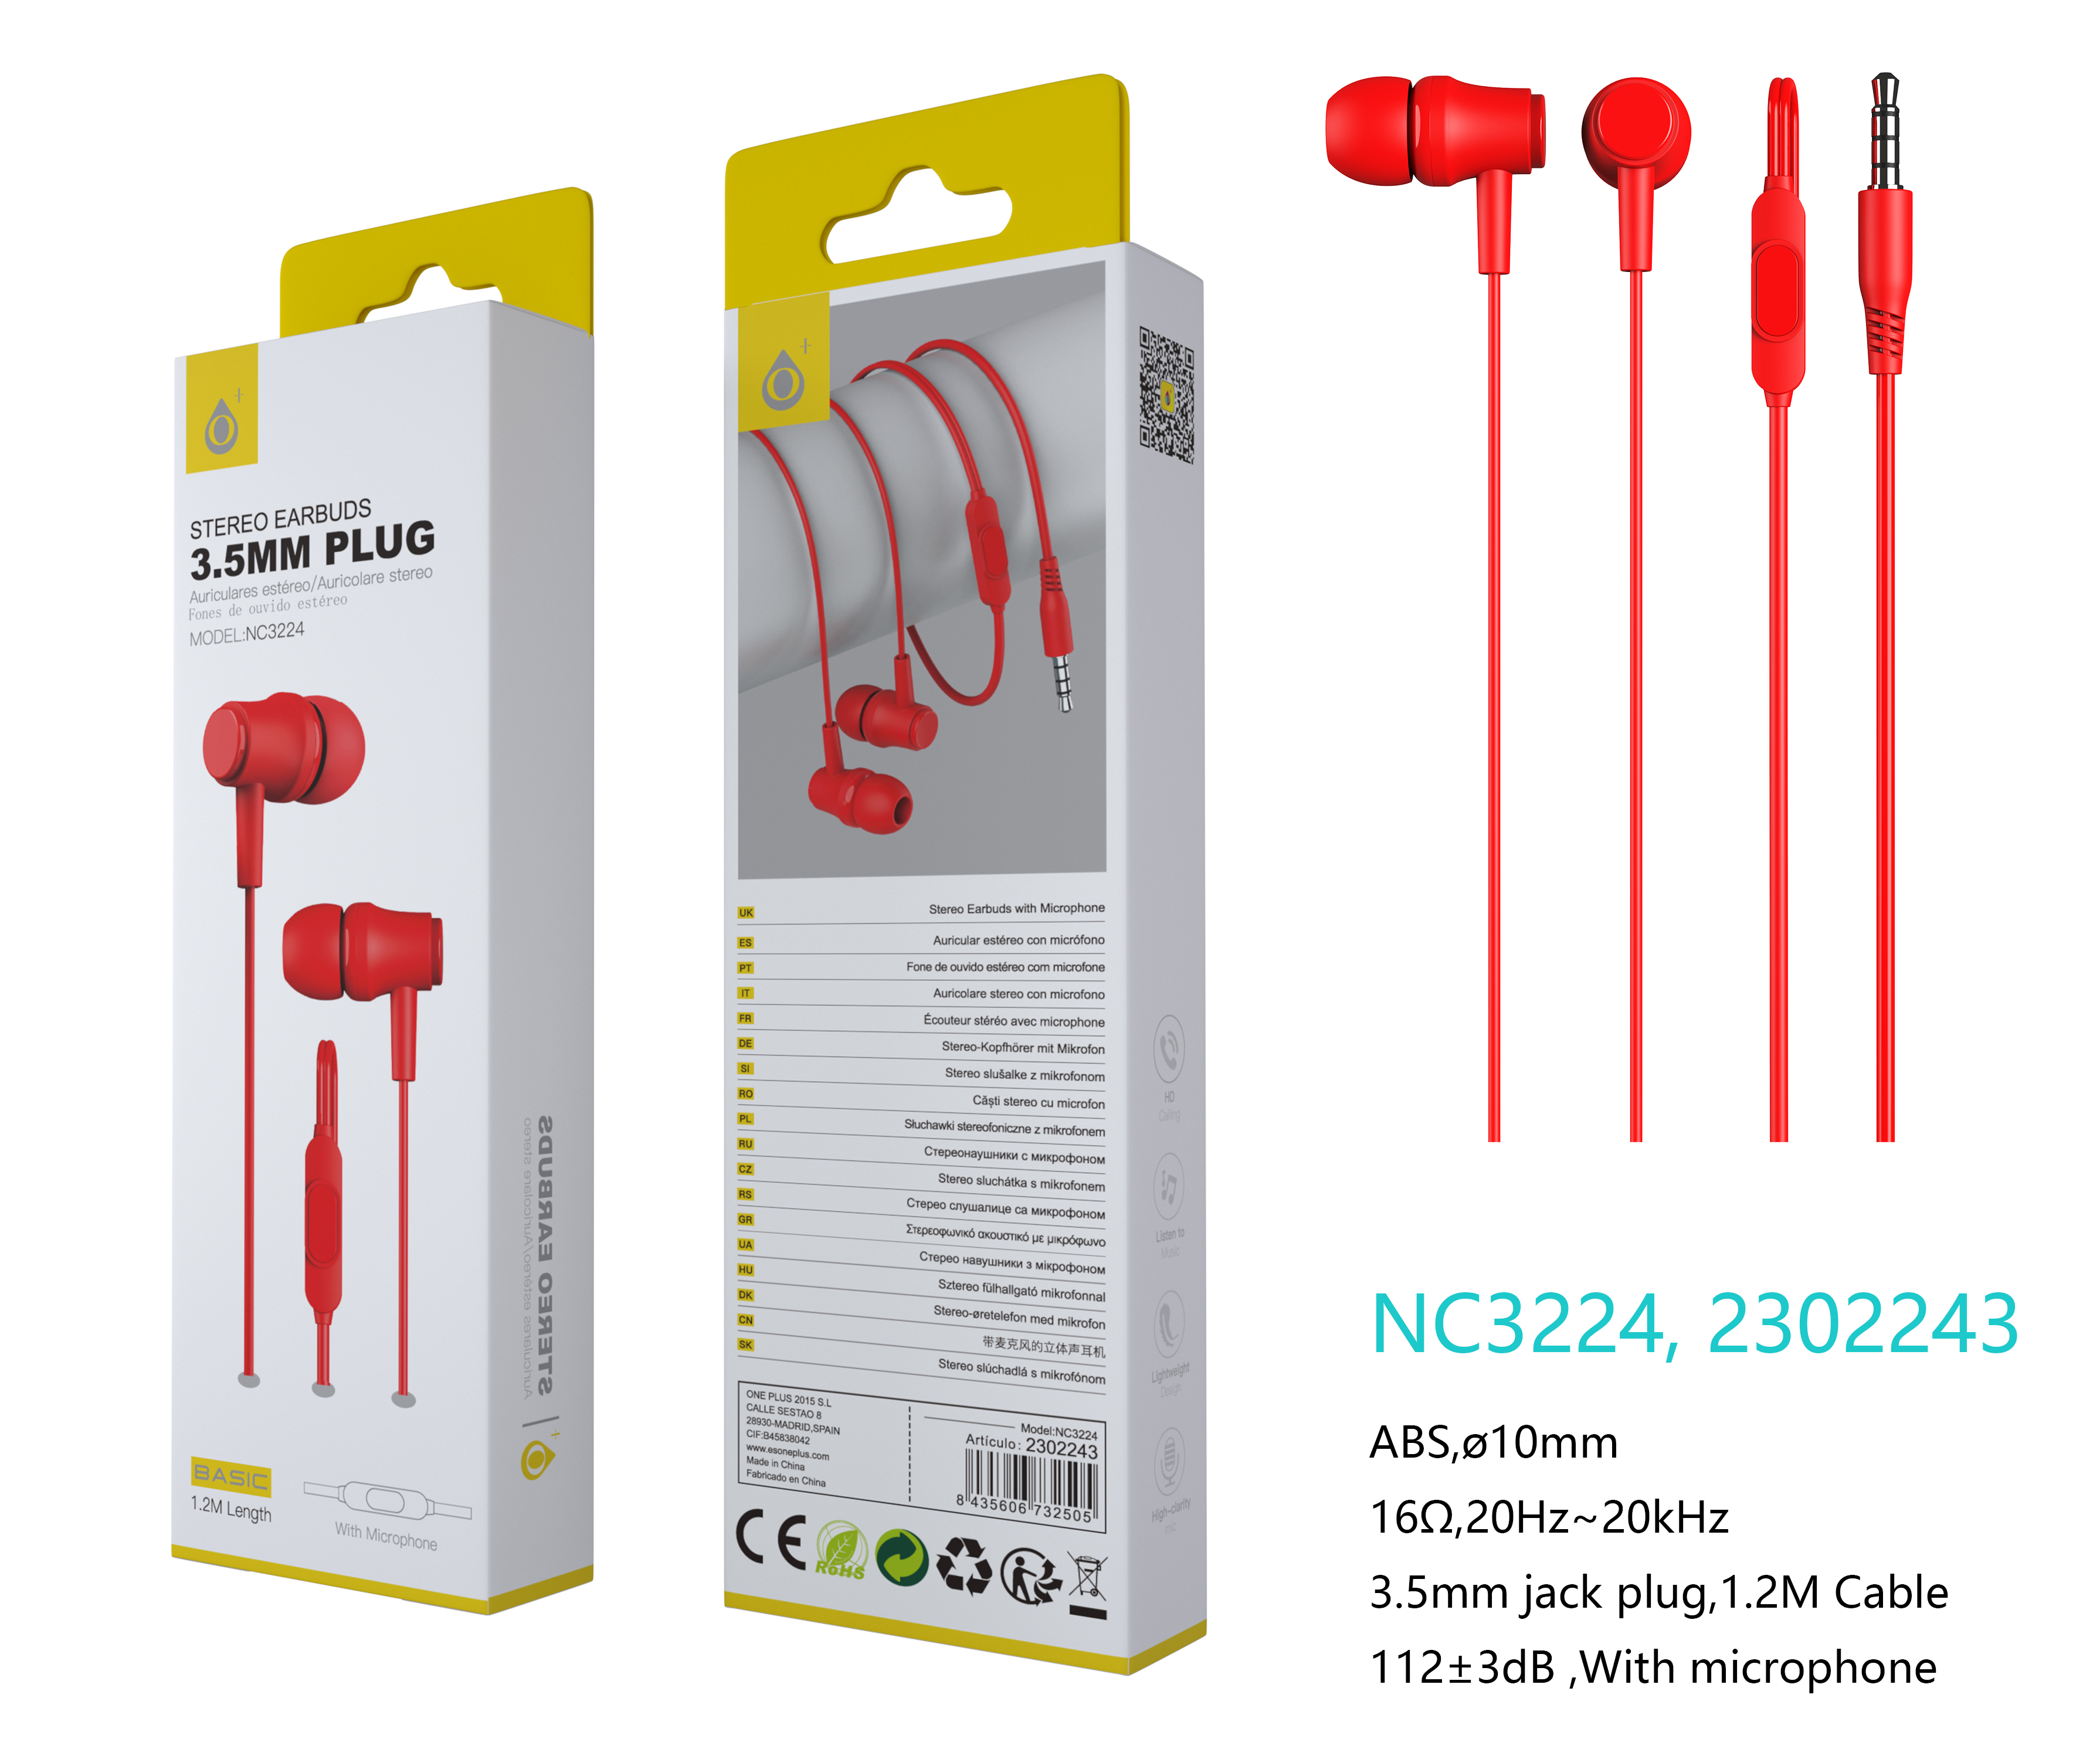 NC3224 RJ Auriculares con microfono S.Basic Singh, con boton multifunciones, cable 1.2M , Rojo